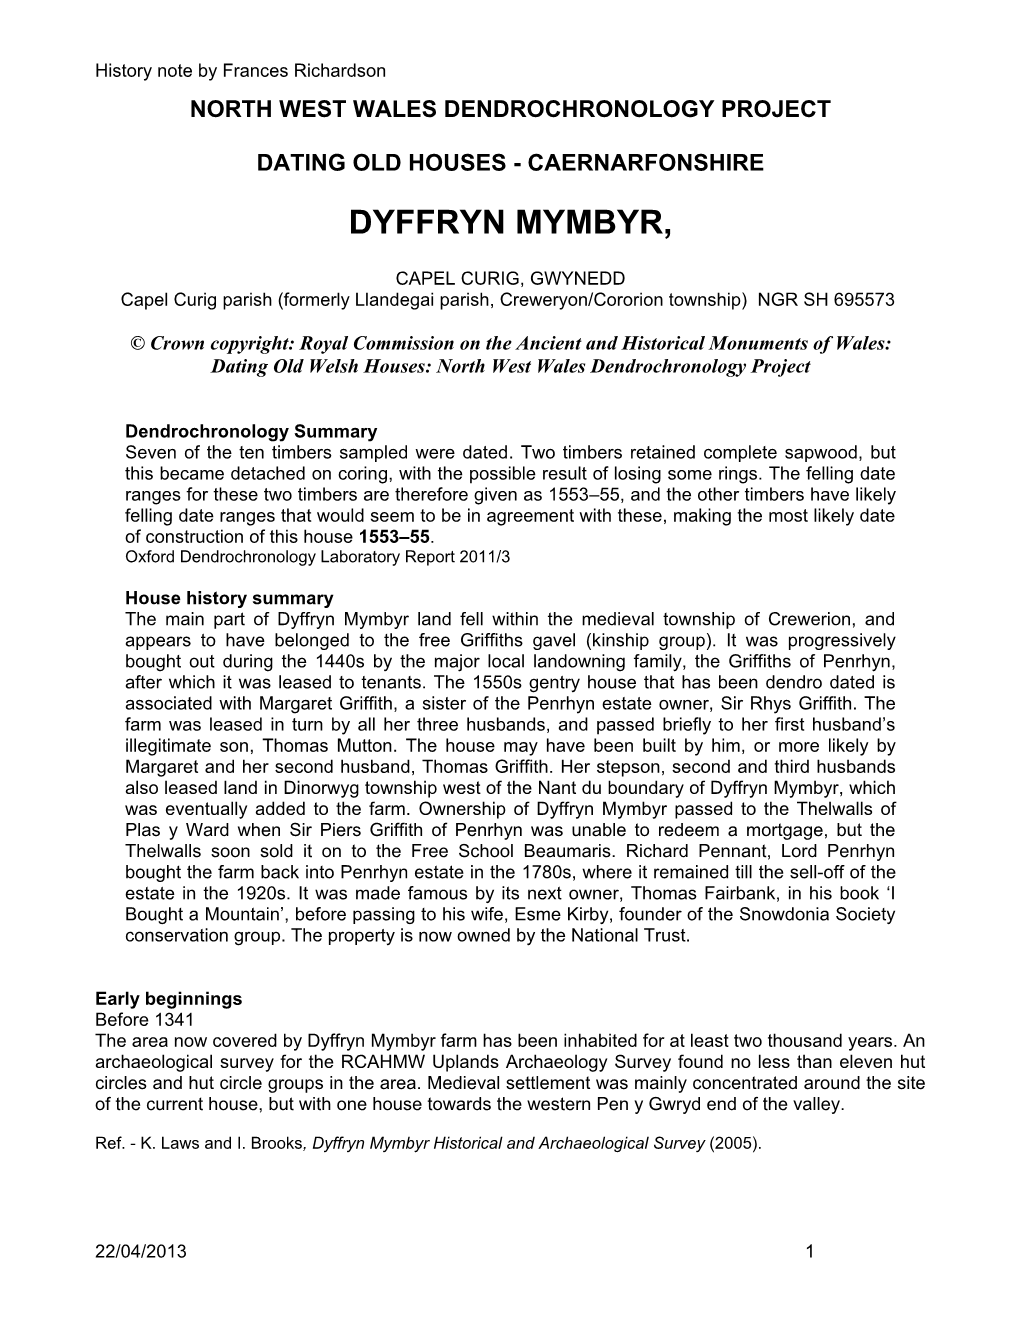 Dyffryn Mymbyr – a Partial History